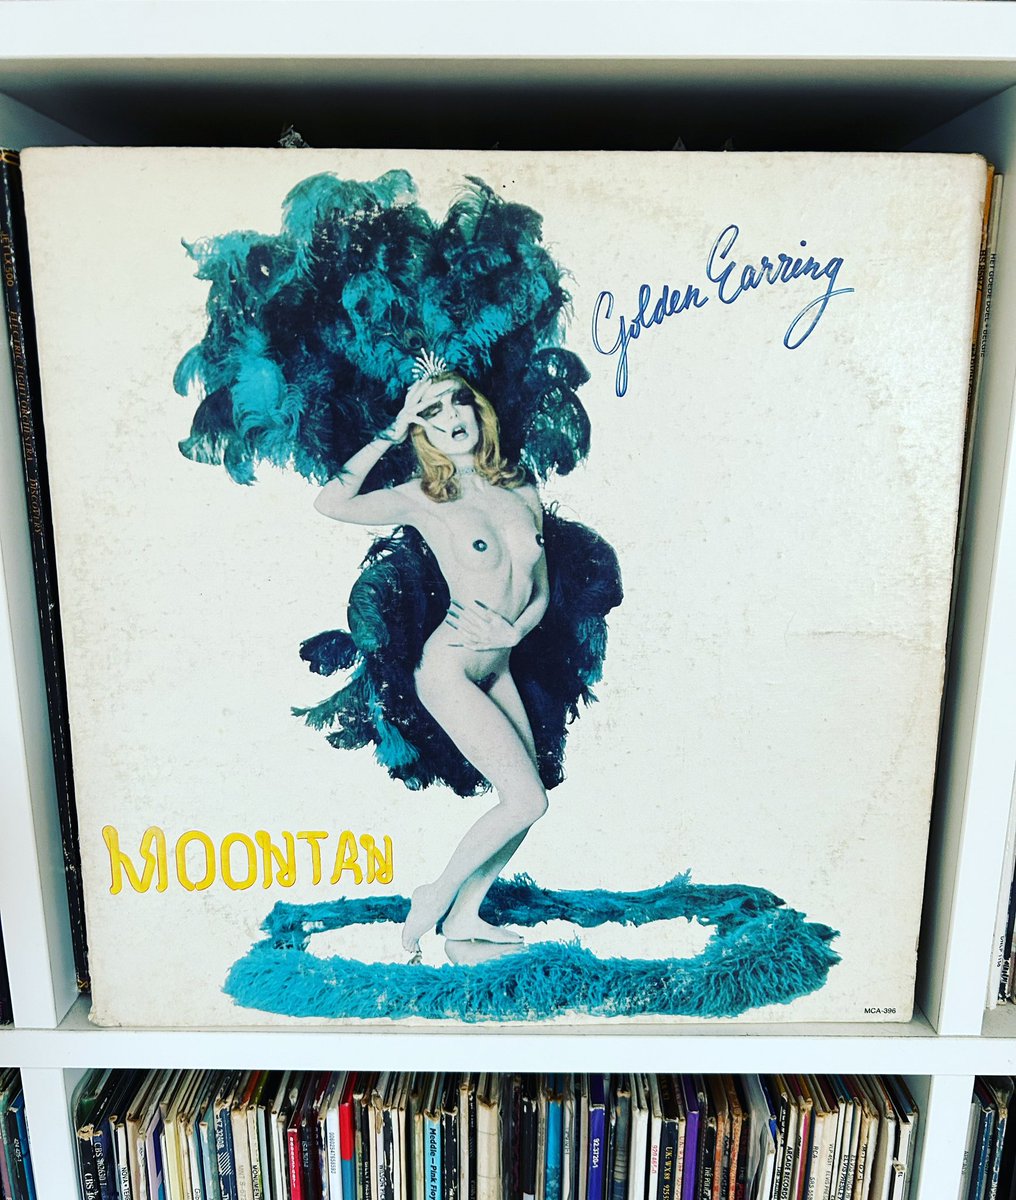 50 jaar geleden verscheen het album Moontan van #GoldenEarring. Mede door de monsterhit Radar Love wordt het gezien als hun beste album.

Aanstaande maandag is het album de LP van de Week in Cappelle Calling op @Regio90_nl. Welk nummer van het album moet ik zeker draaien?